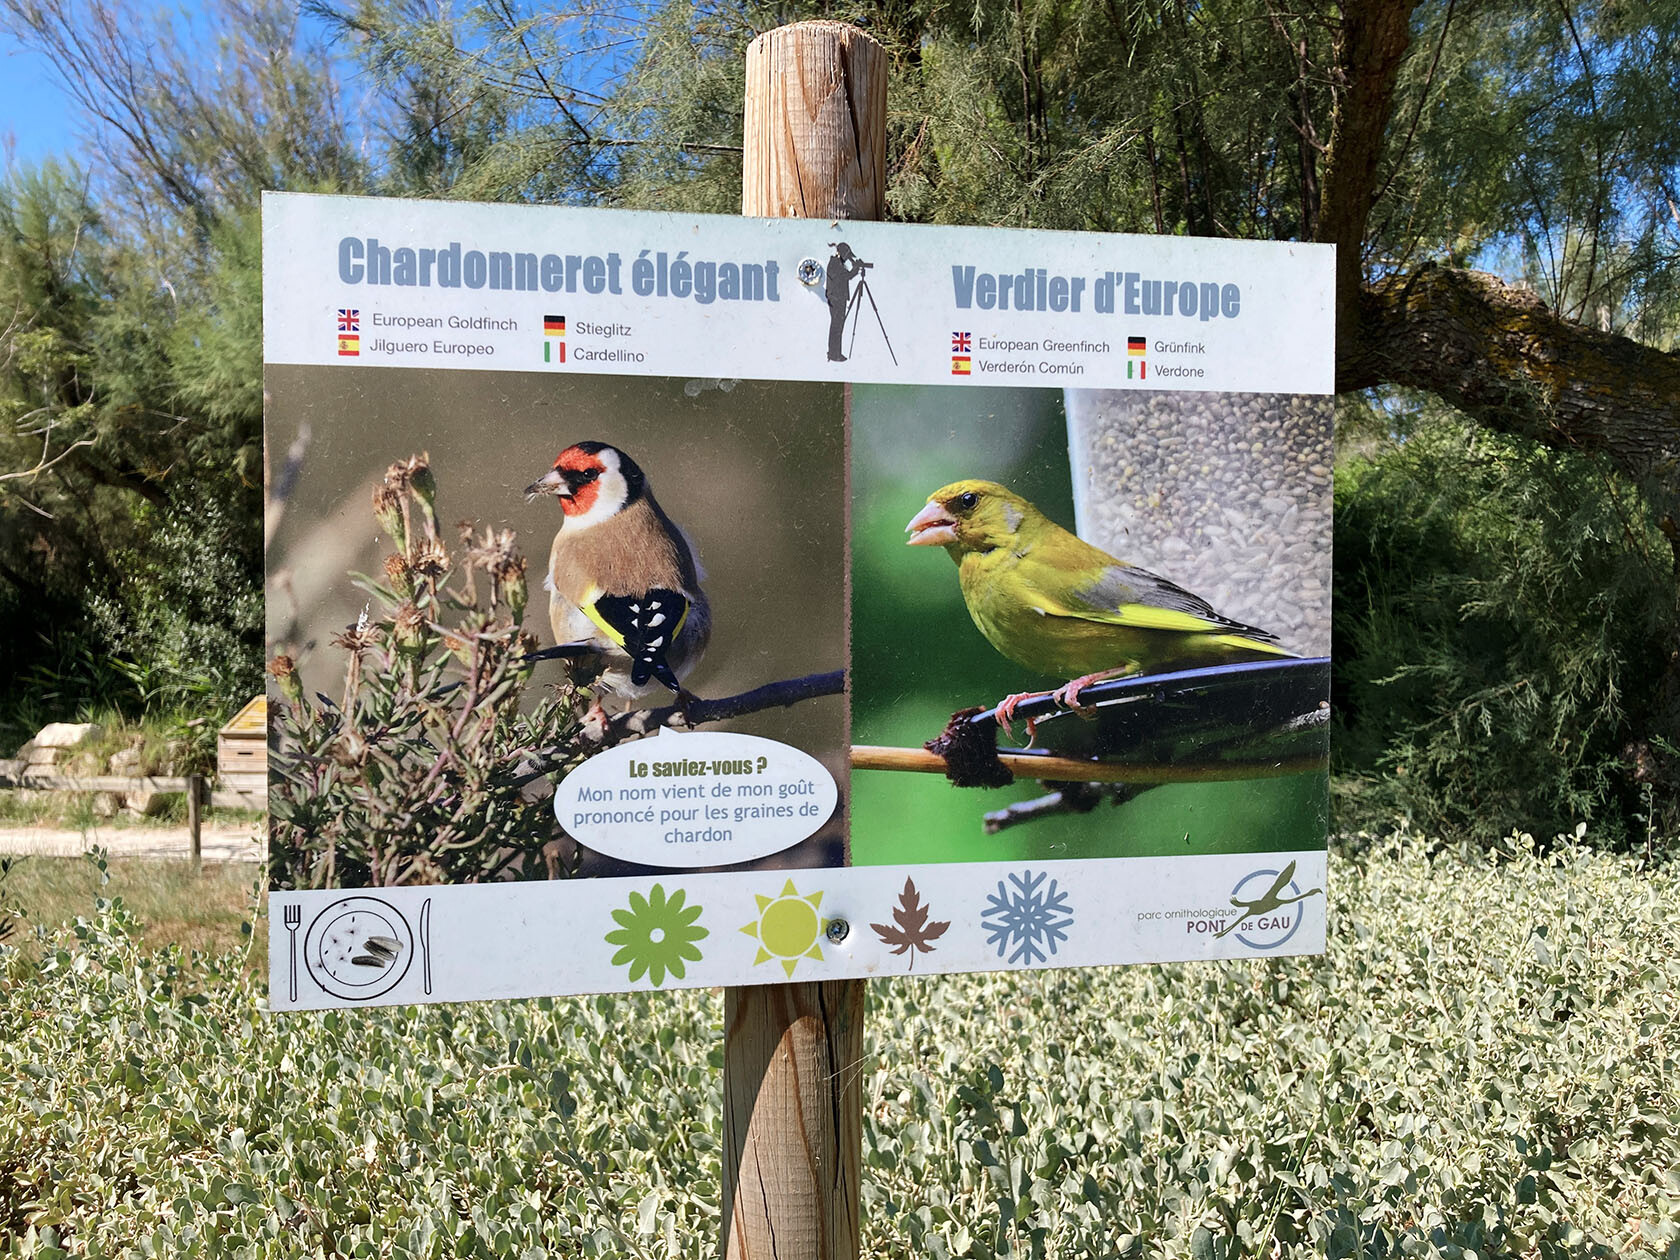 Parc ornithologique du Pont de Gau